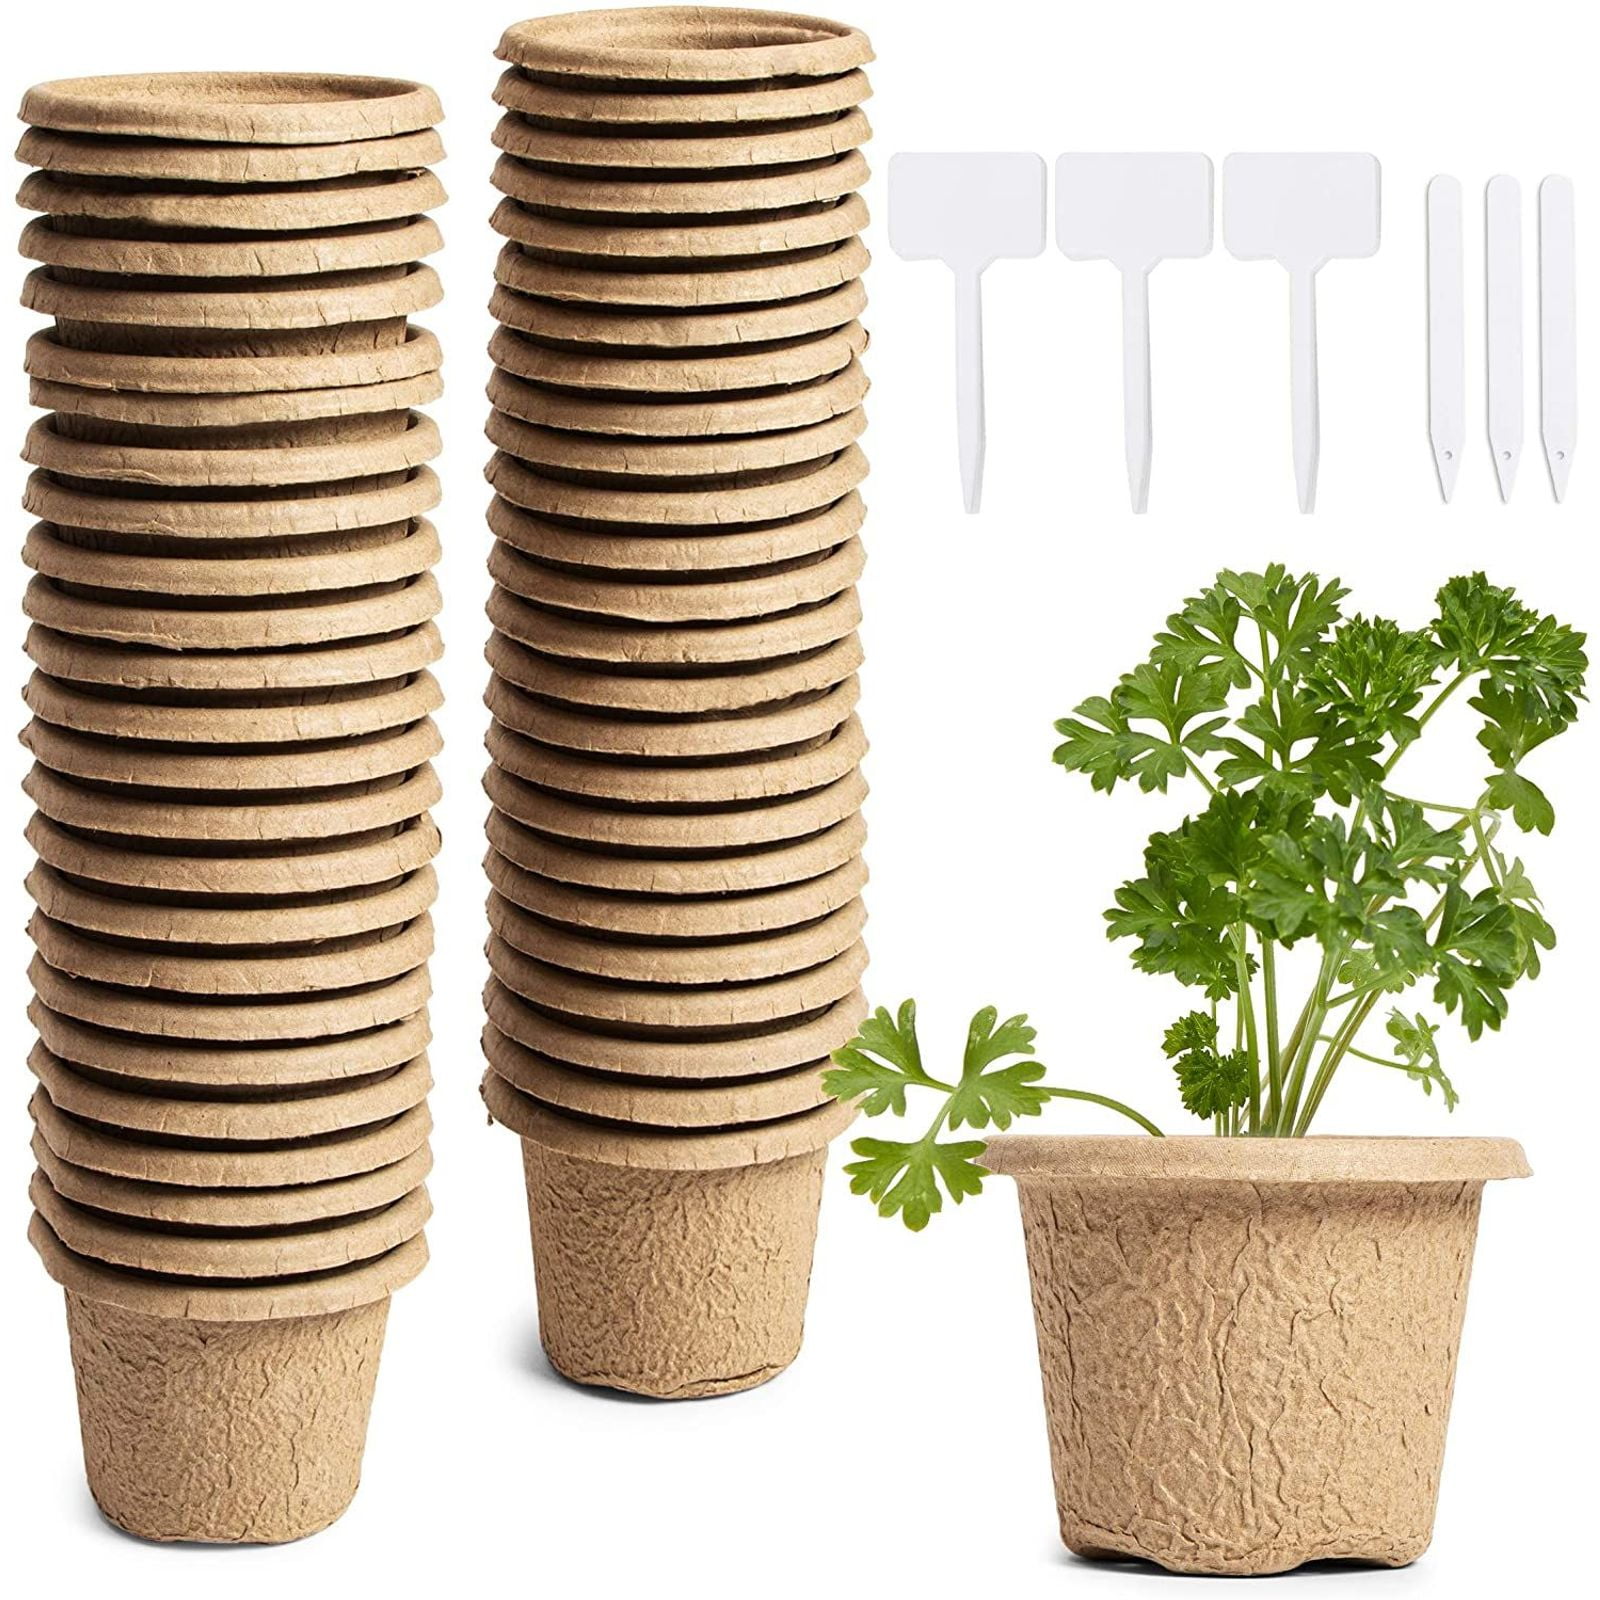 Details about   3 Inch Nursery Pots Biodegradable Paper Pulp Peat Pots 20/ 50/ 100-500 PACK 